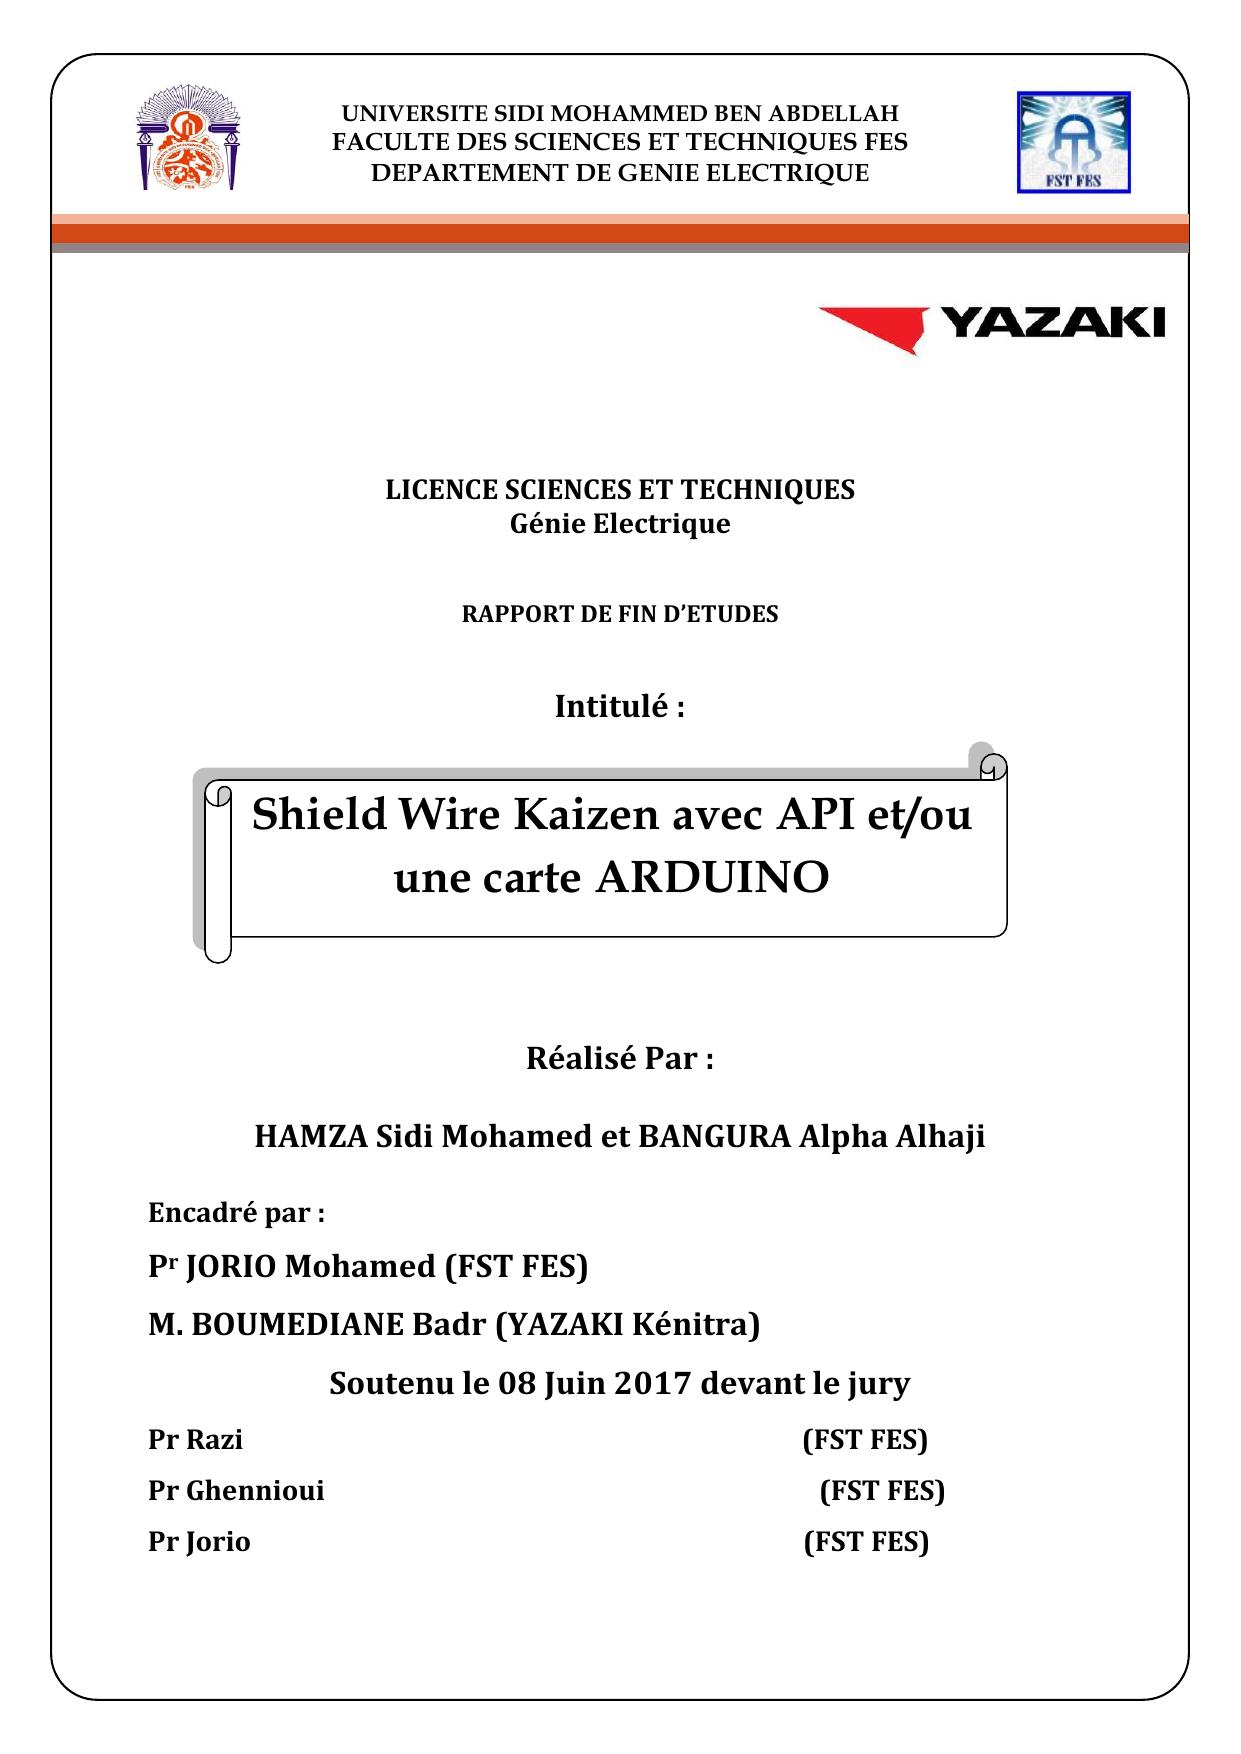 Shield Wire Kaizen avec API et/ou une carte ARDUINO